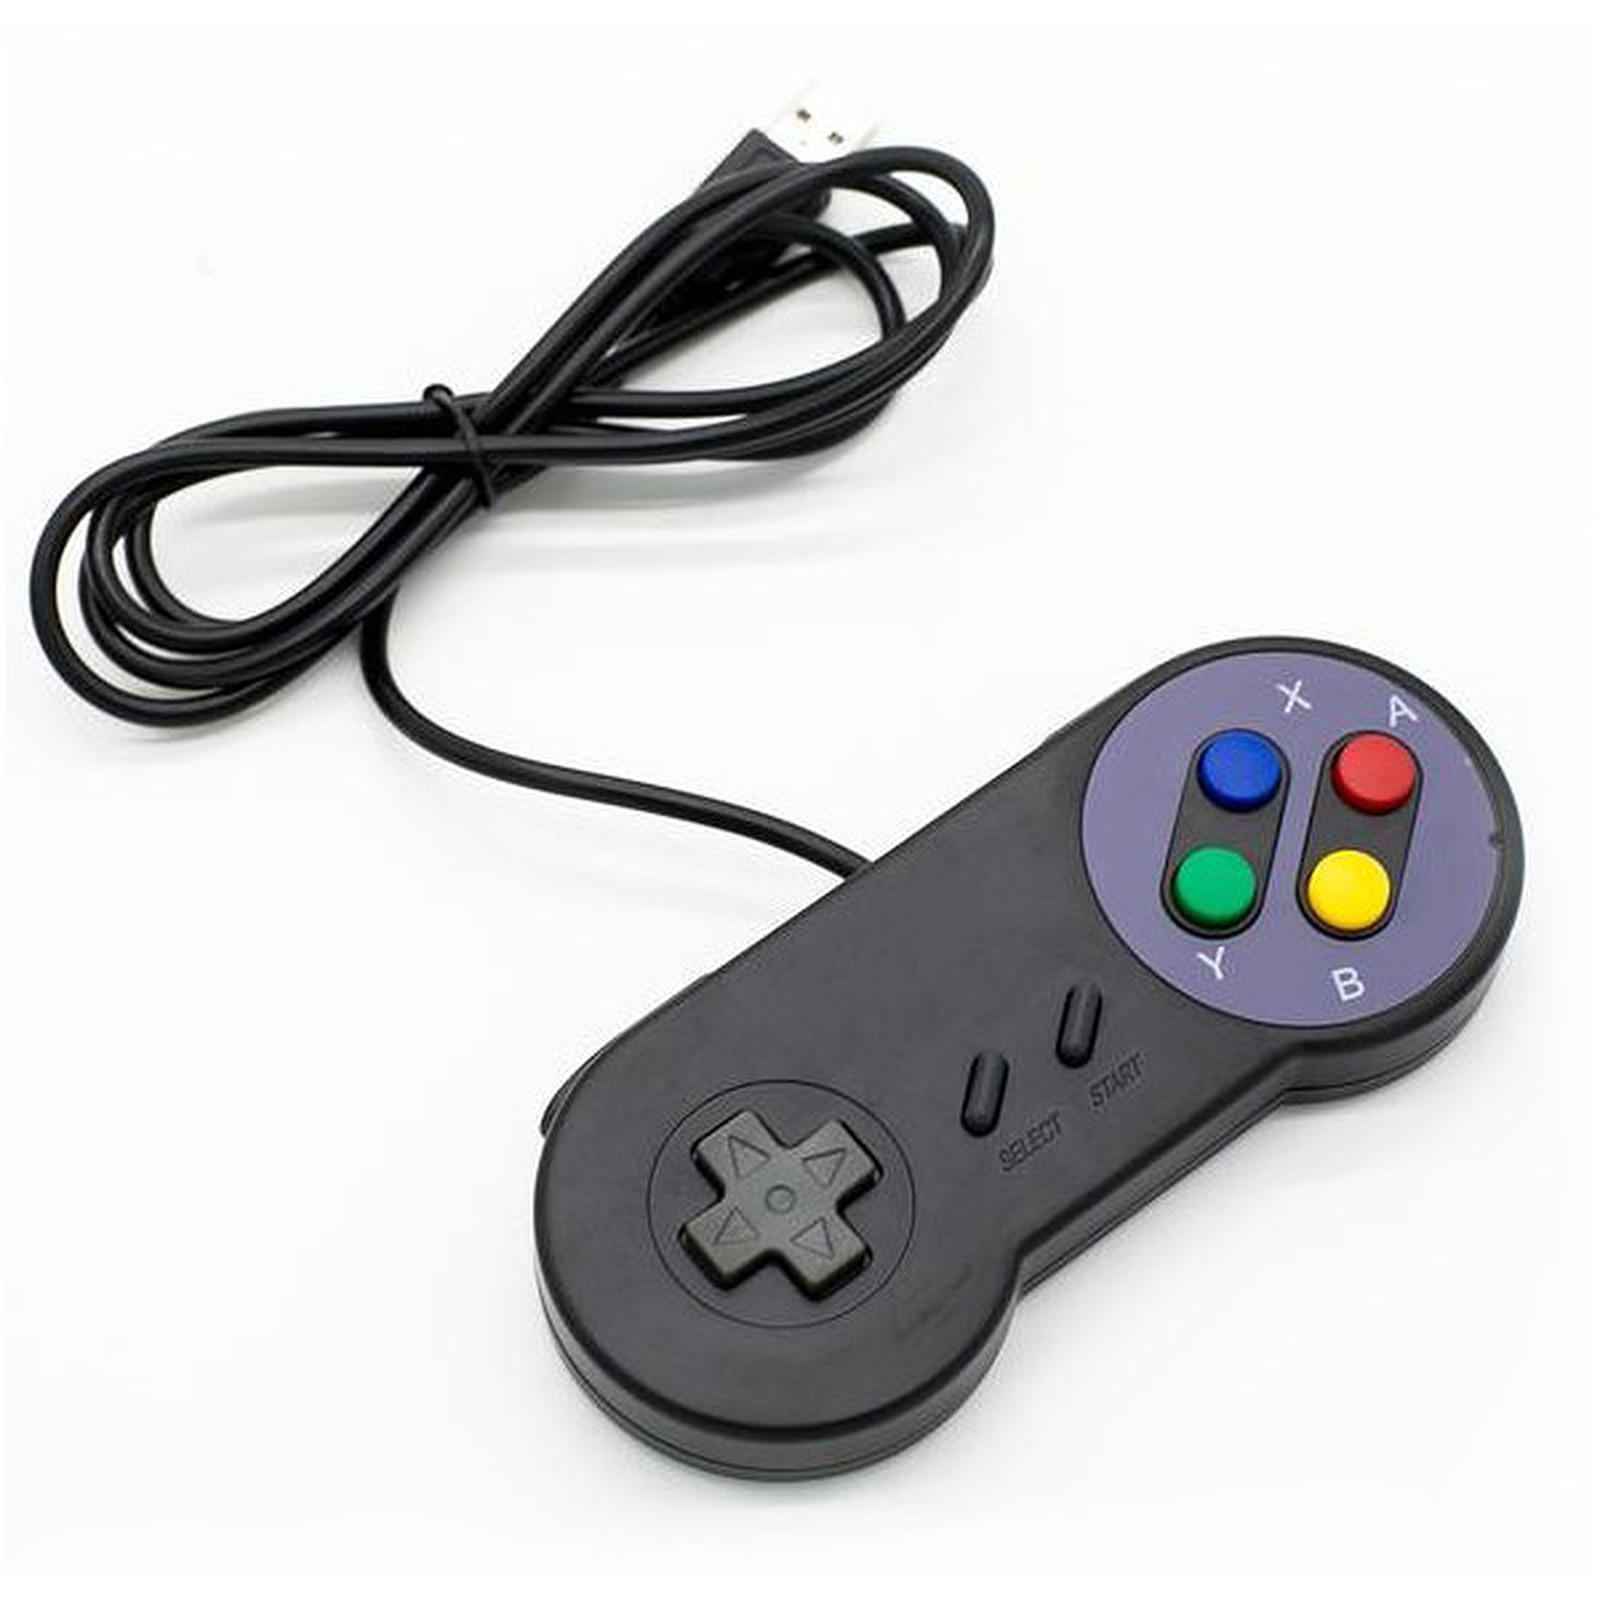 Manette USB pour retrogaming Noire (Nintendo Super NES) - Manette PC Generique